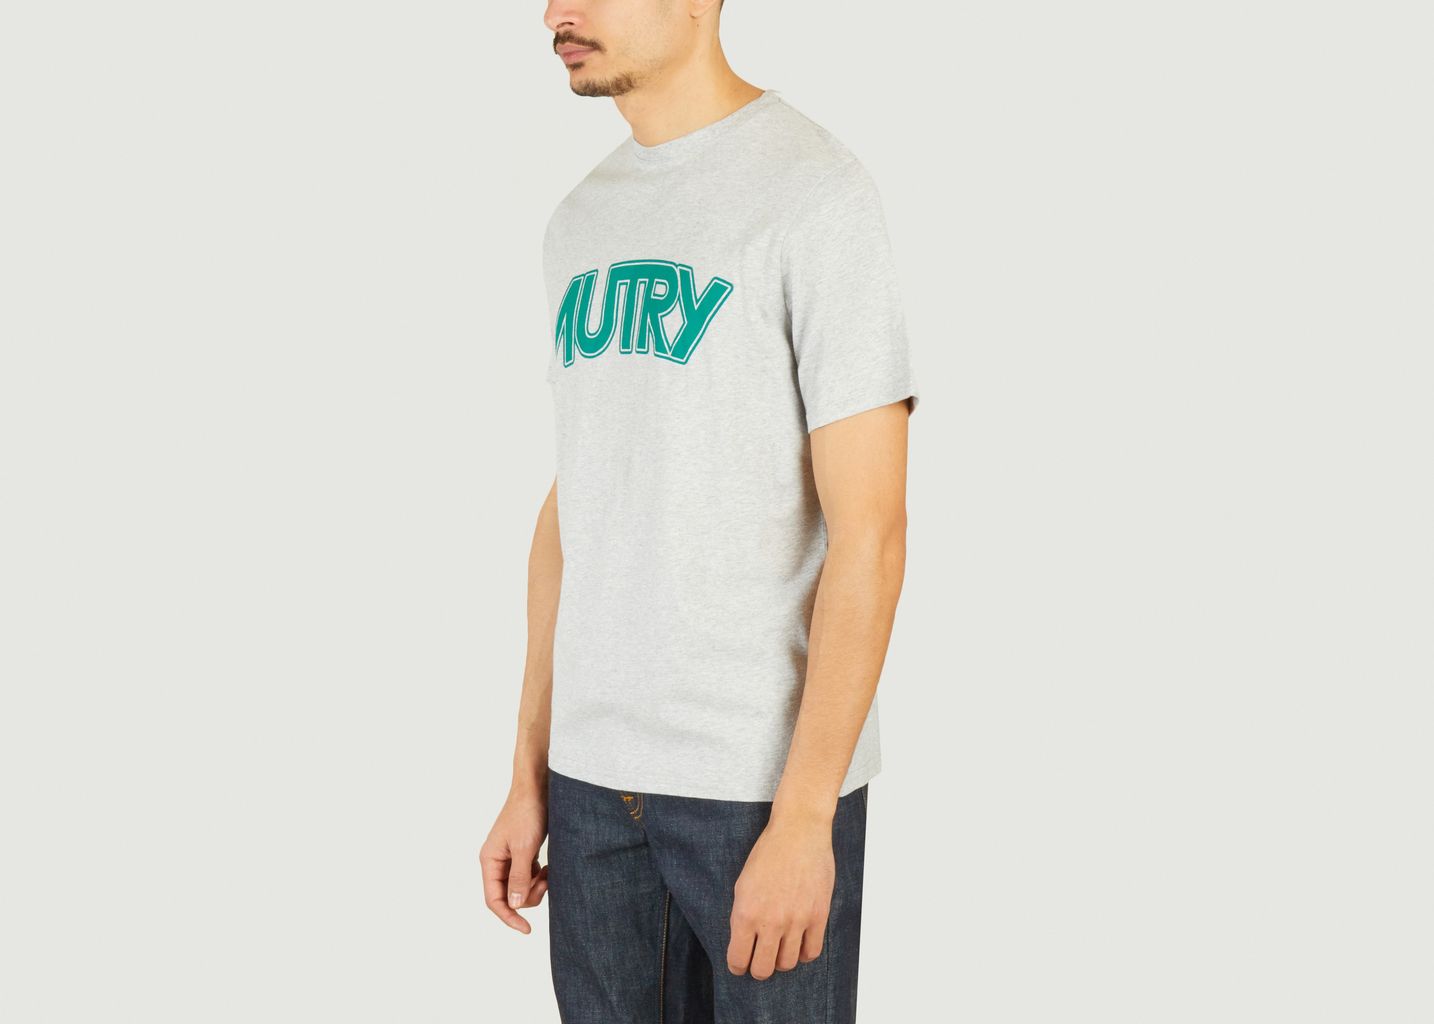 Main Man T-shirt - AUTRY